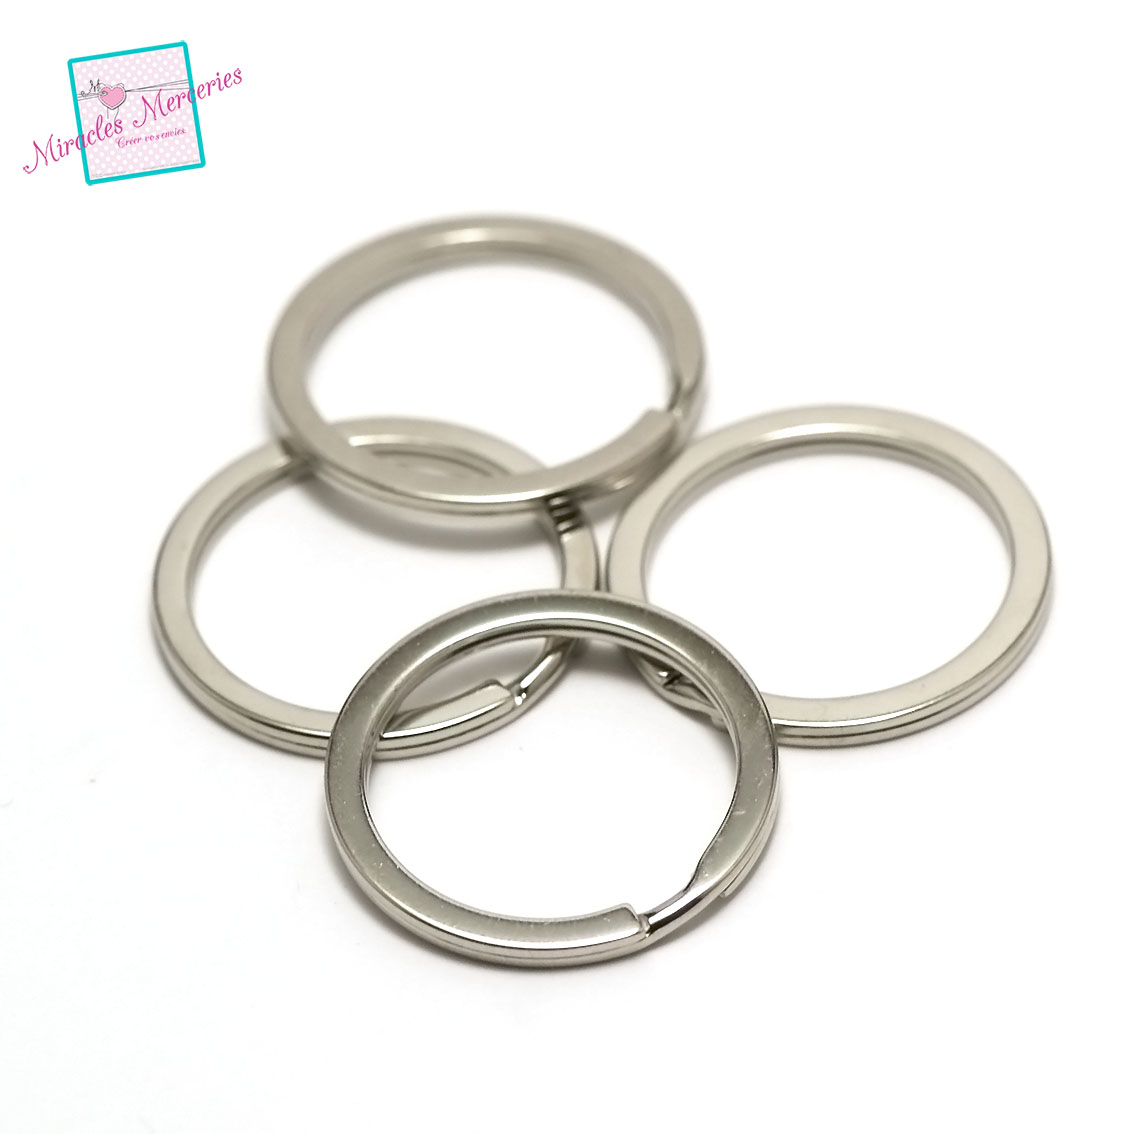 8 anneaux porte-clé anneaux rond,30x3mm, métal ,argenté